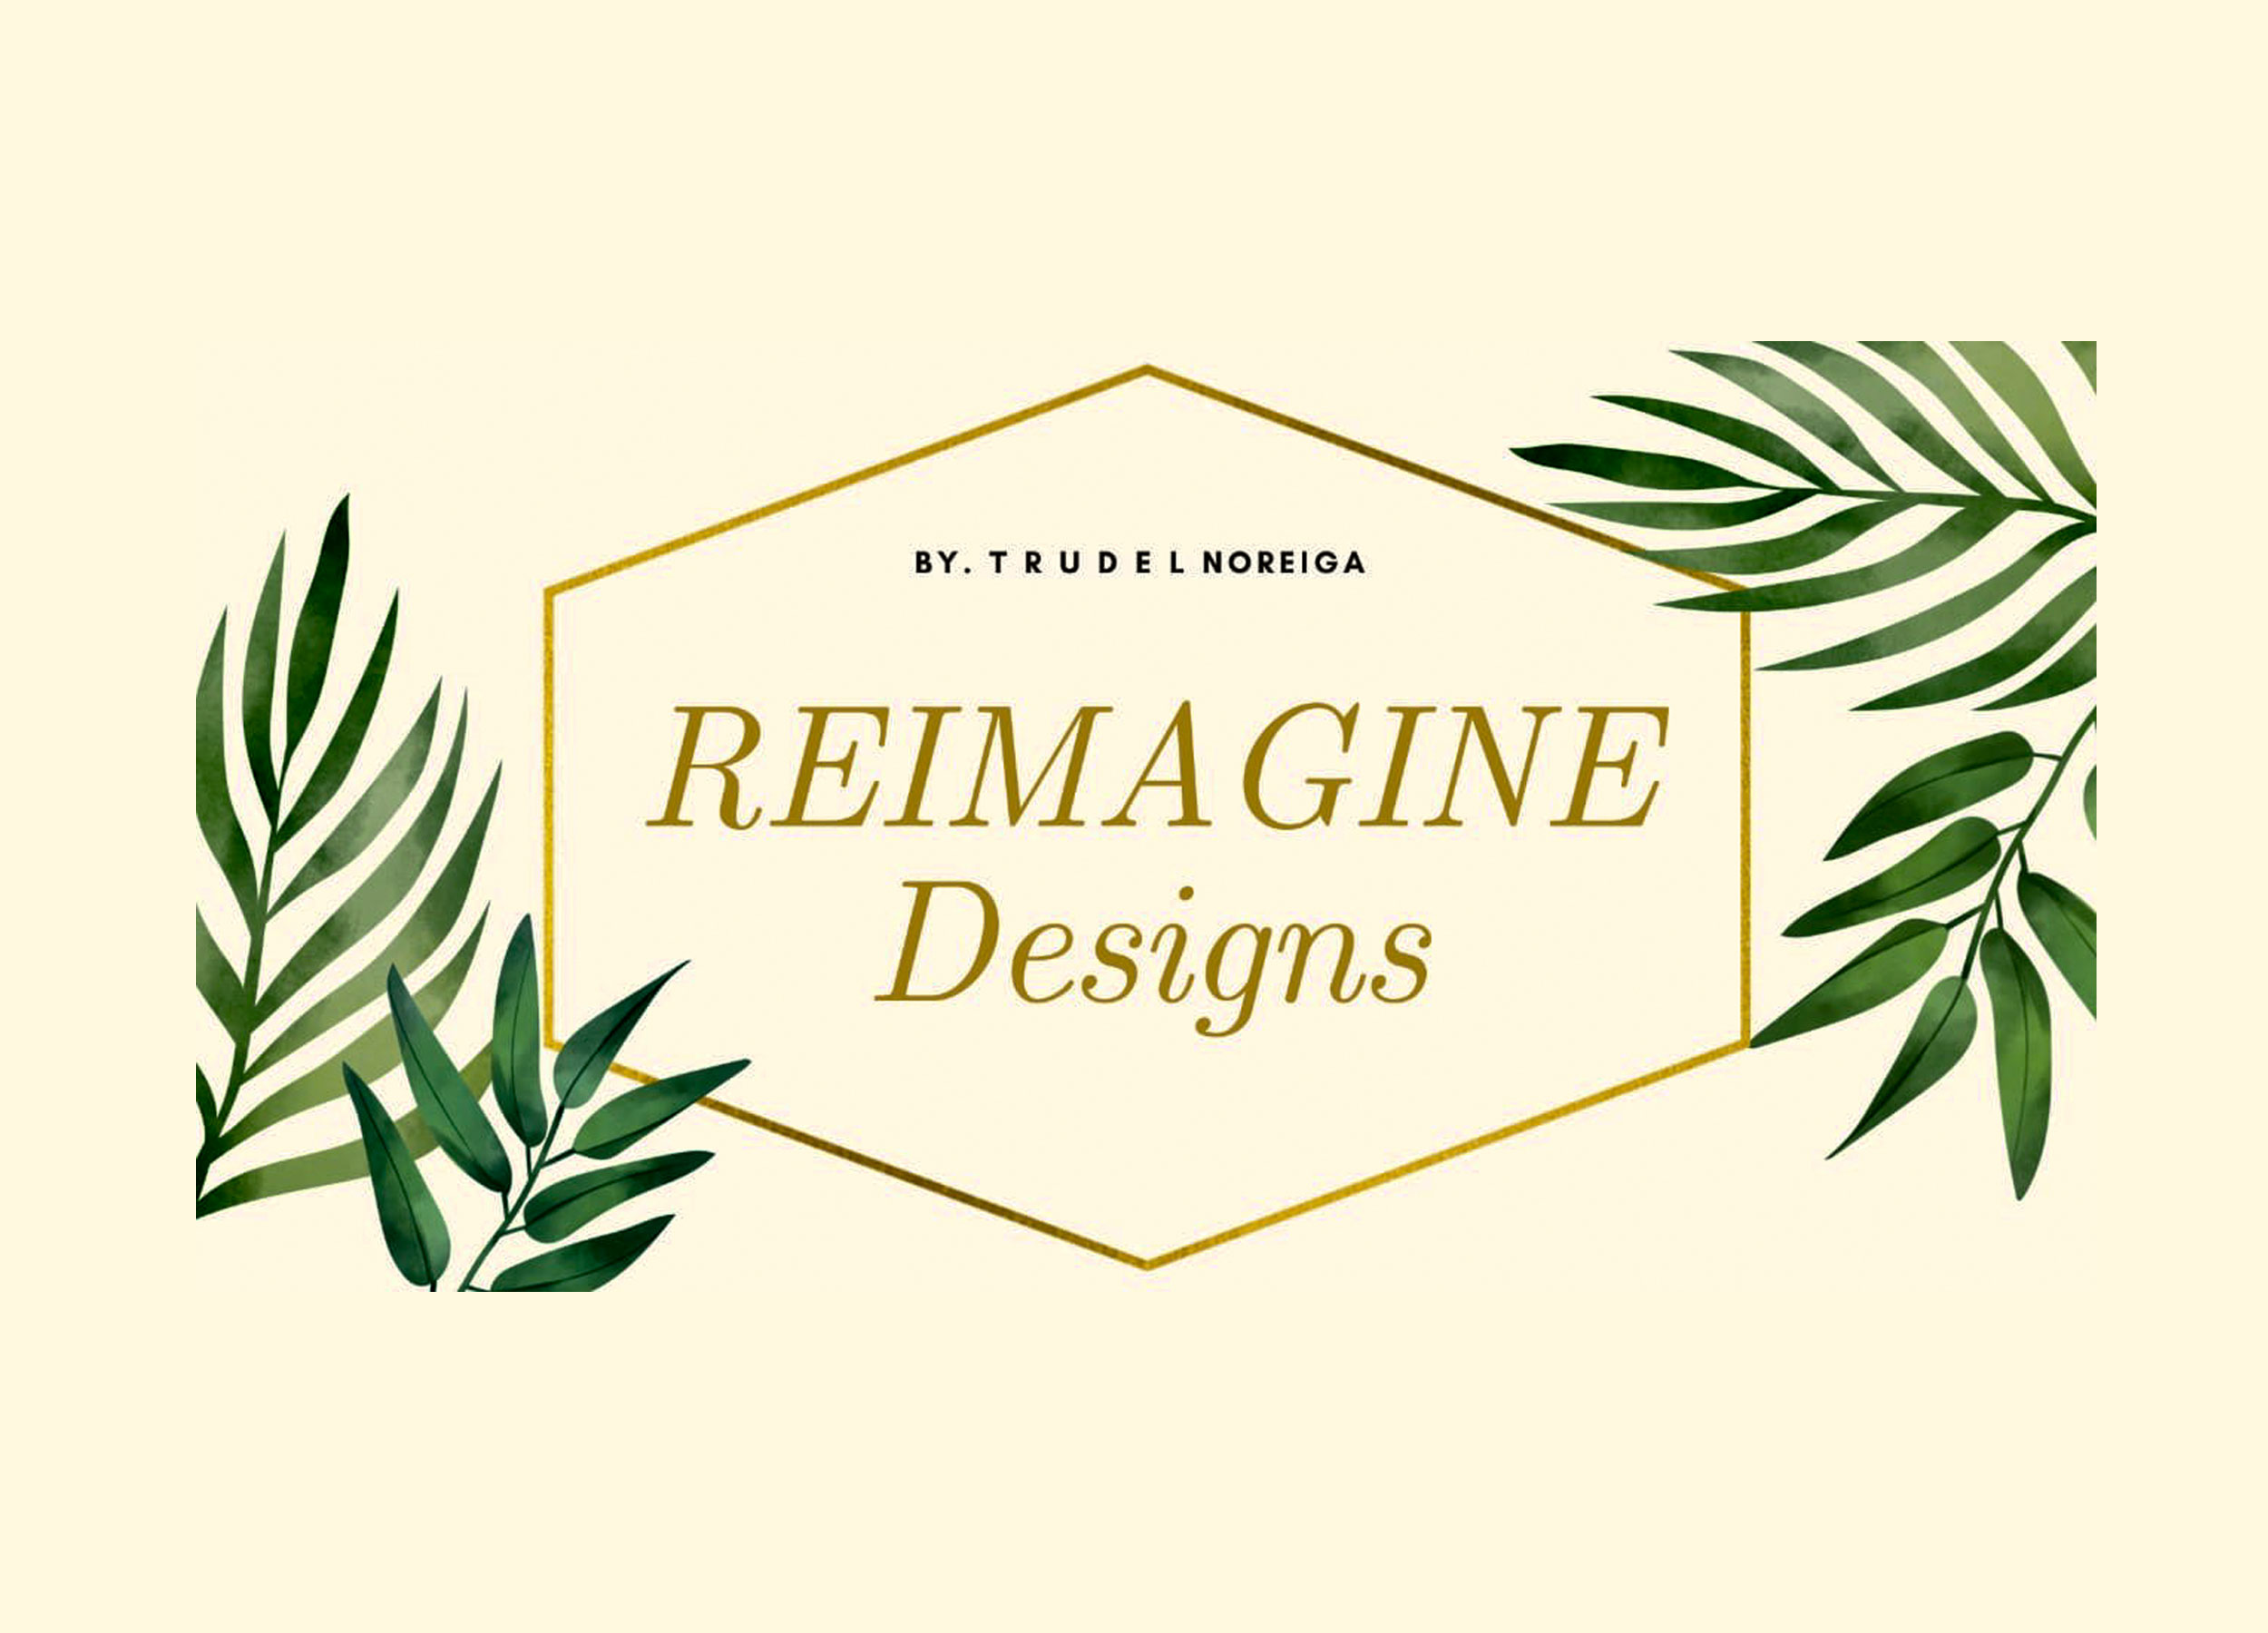 Reimagine Designs